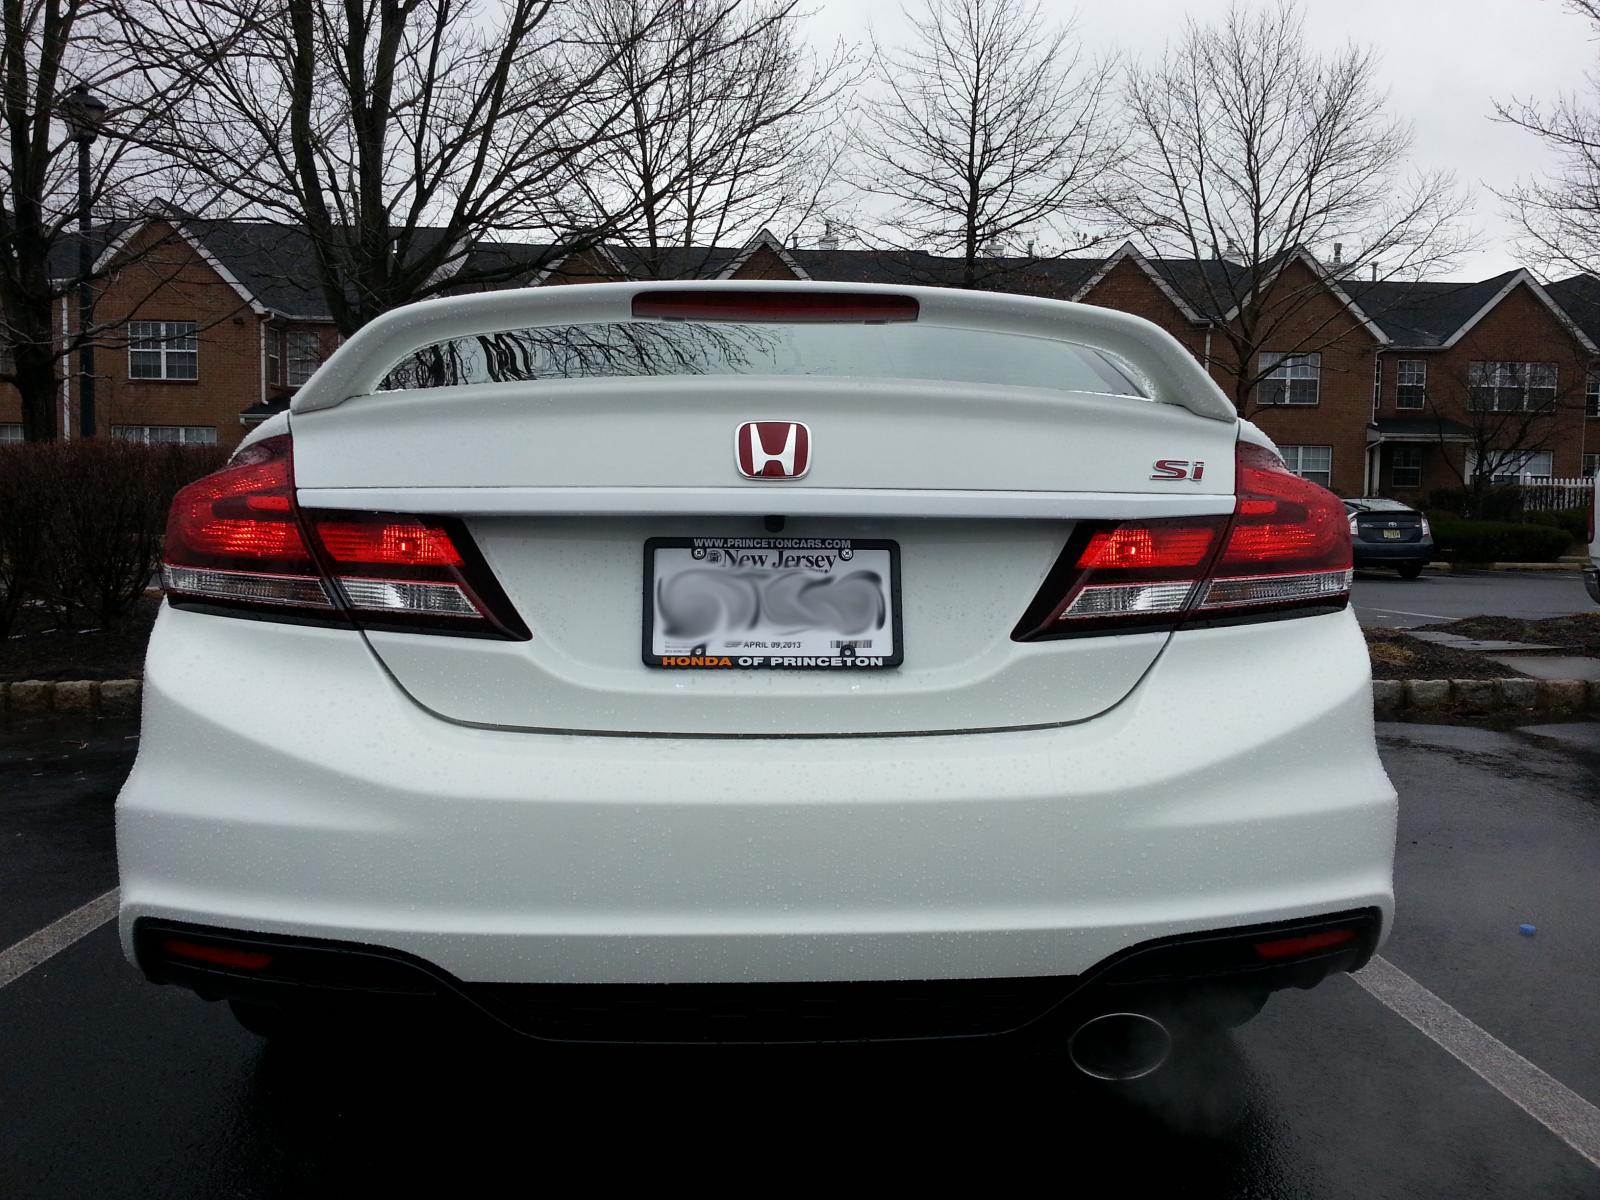 2013 Honda Civic Logo - Red Honda Emblems Installed!